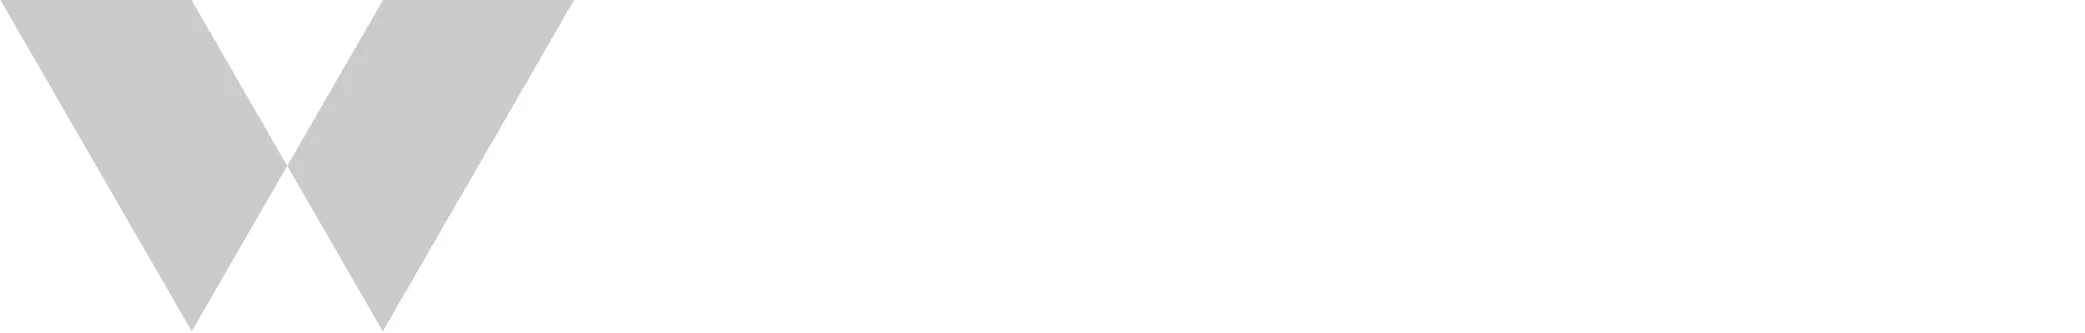 wooacademy